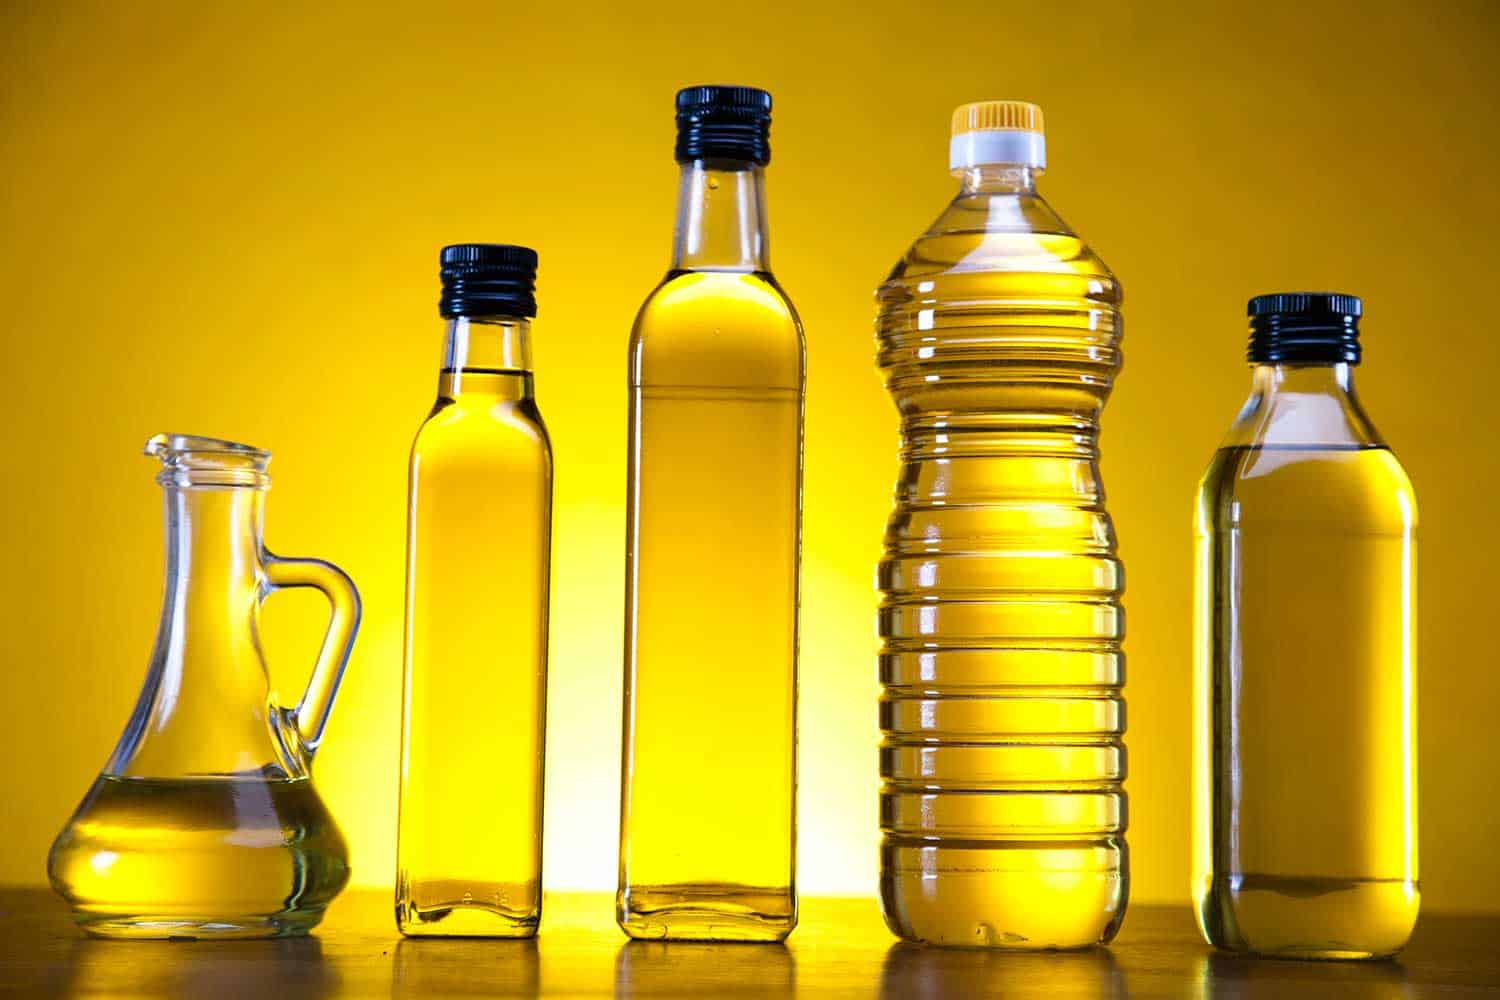 Olive oil storage bottles